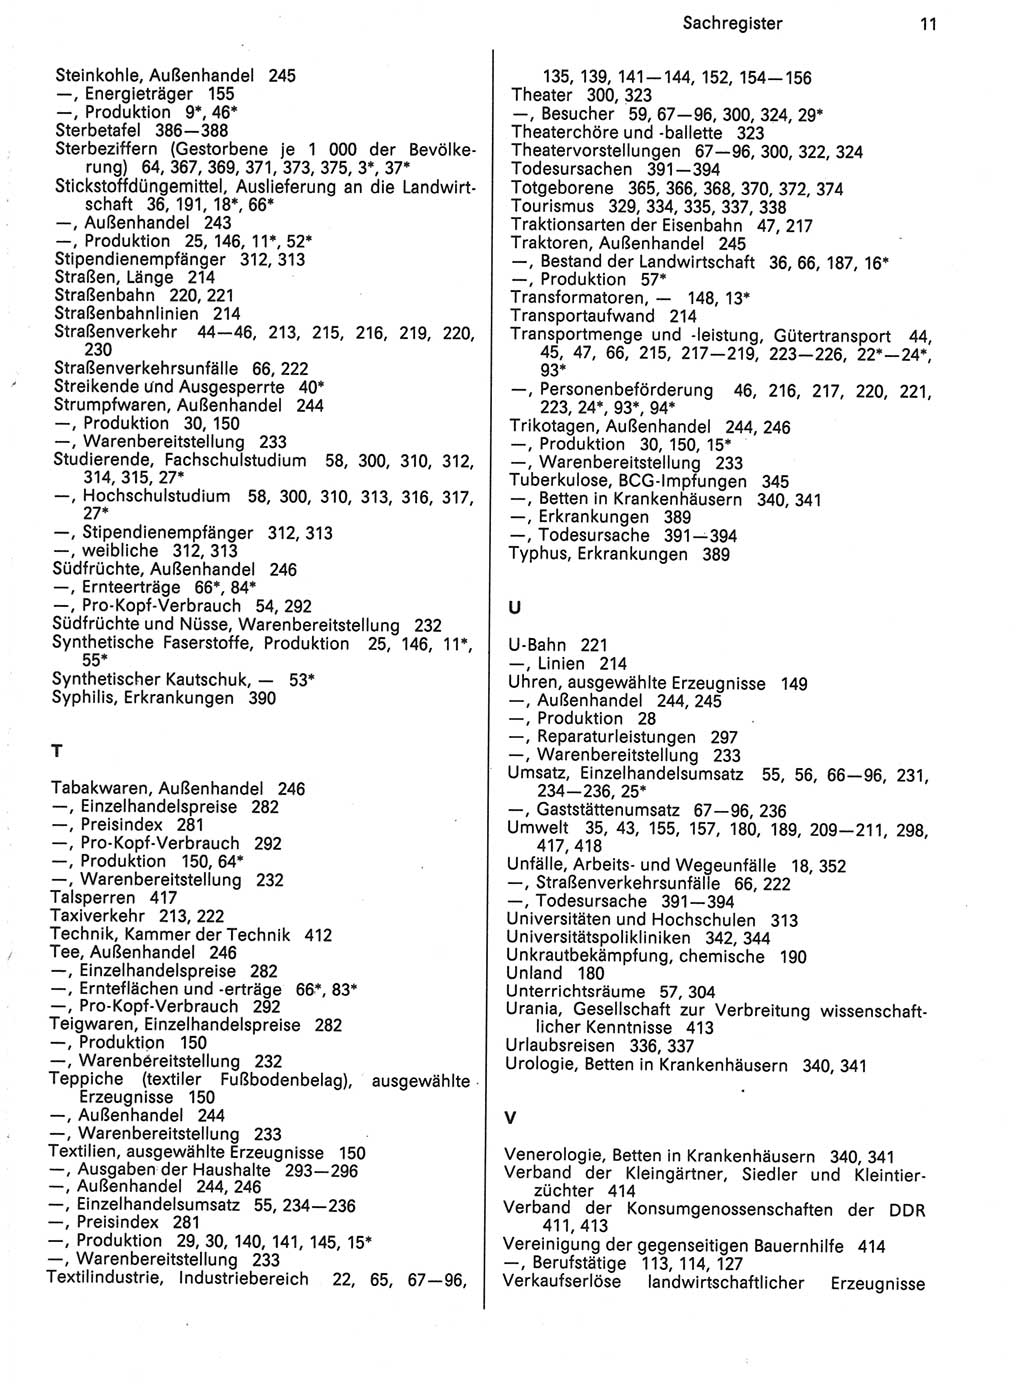 Statistisches Jahrbuch der Deutschen Demokratischen Republik (DDR) 1988, Seite 11 (Stat. Jb. DDR 1988, S. 11)